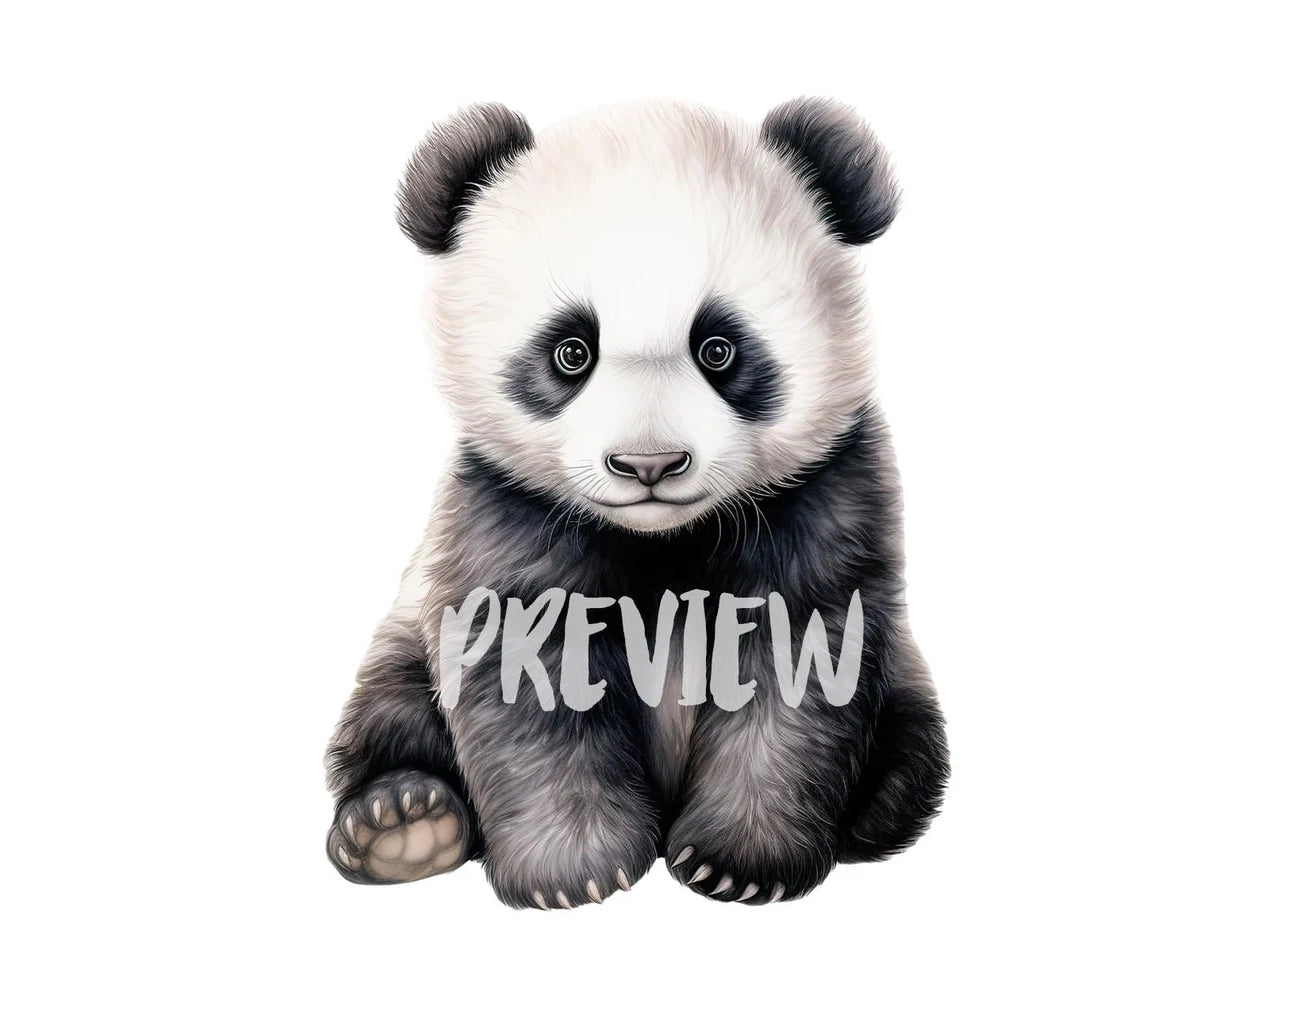 Watercolor Panda Bear Clipart